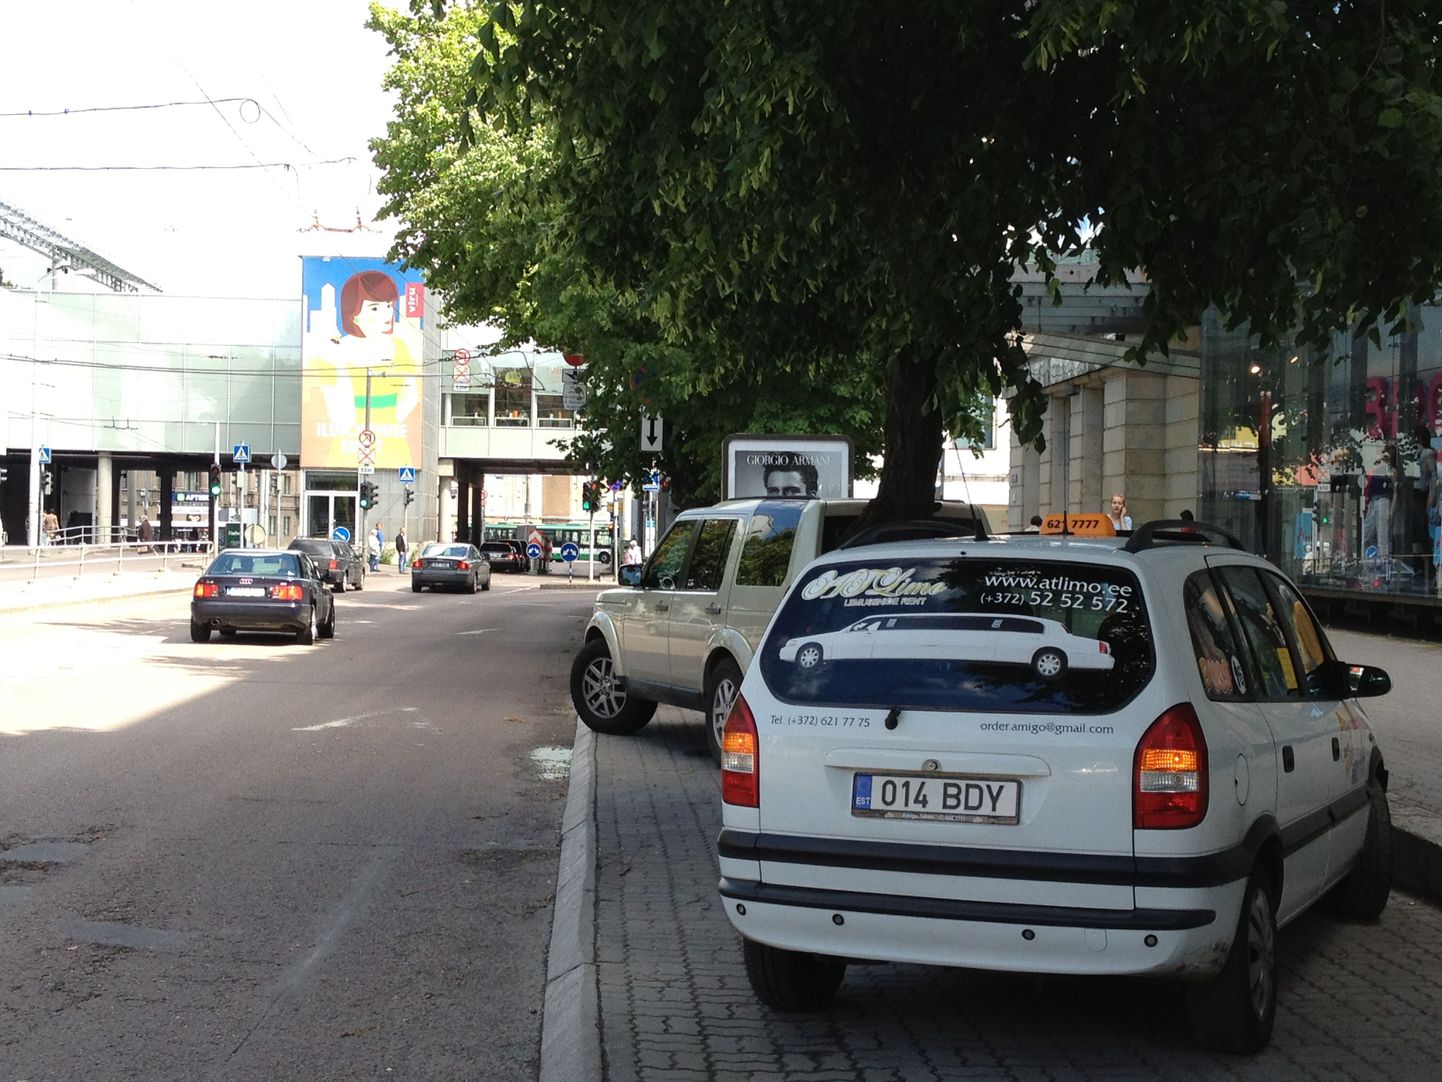 Estonia pst 1. Piltmõistatus: leia pildilt parkimist keelav märk.